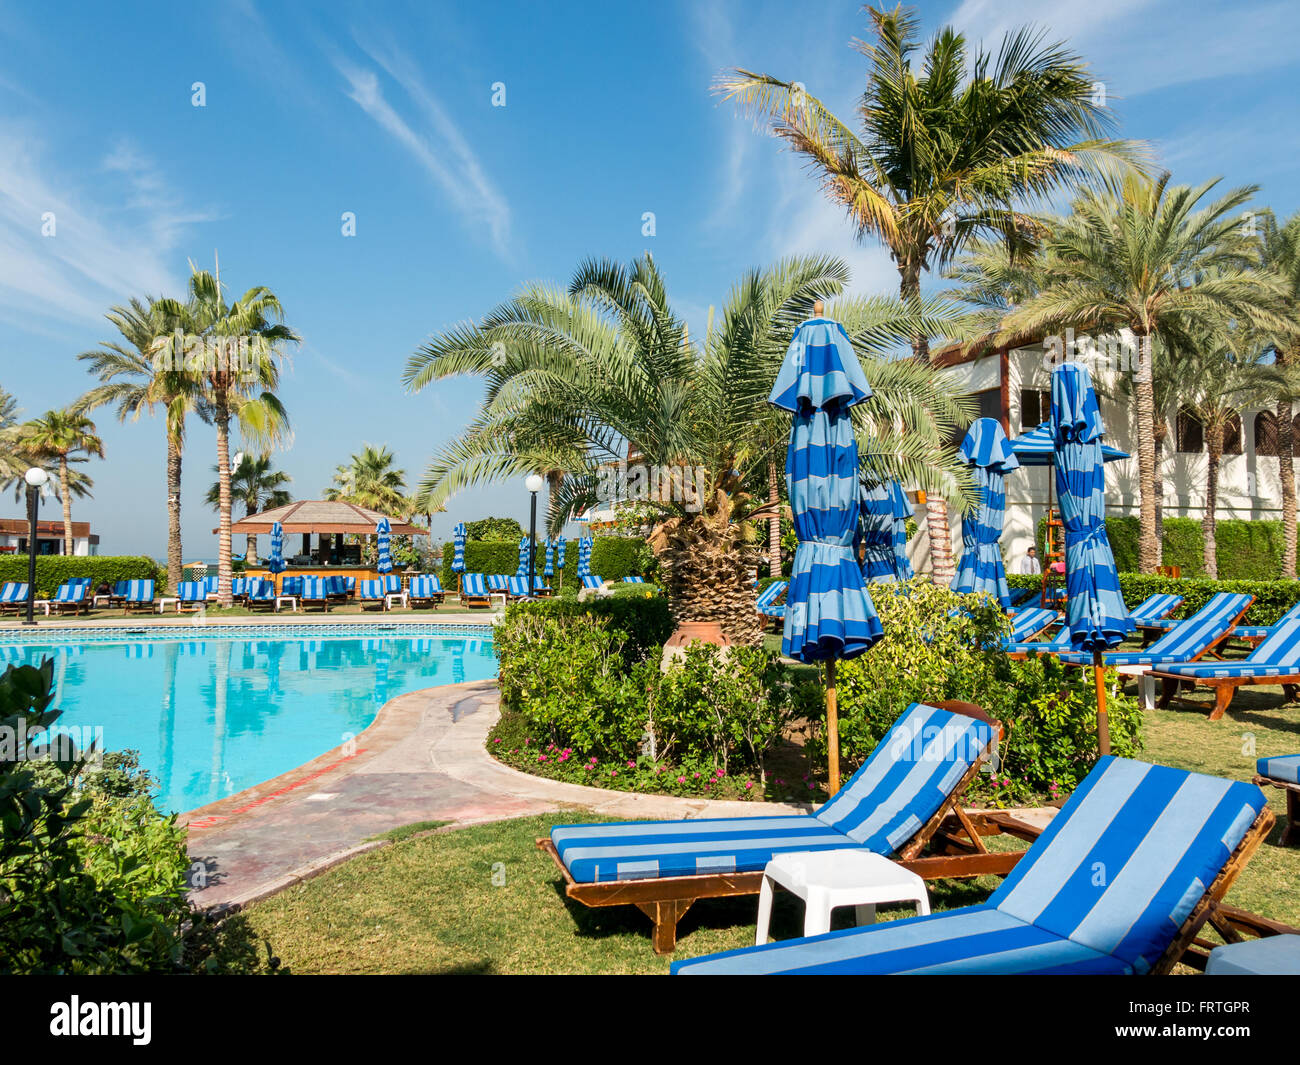 Reposeras, palmeras y una piscina en un jardín tropical de lujo hotel beach  resort en Dubai, Emiratos Árabes Unidos Fotografía de stock - Alamy